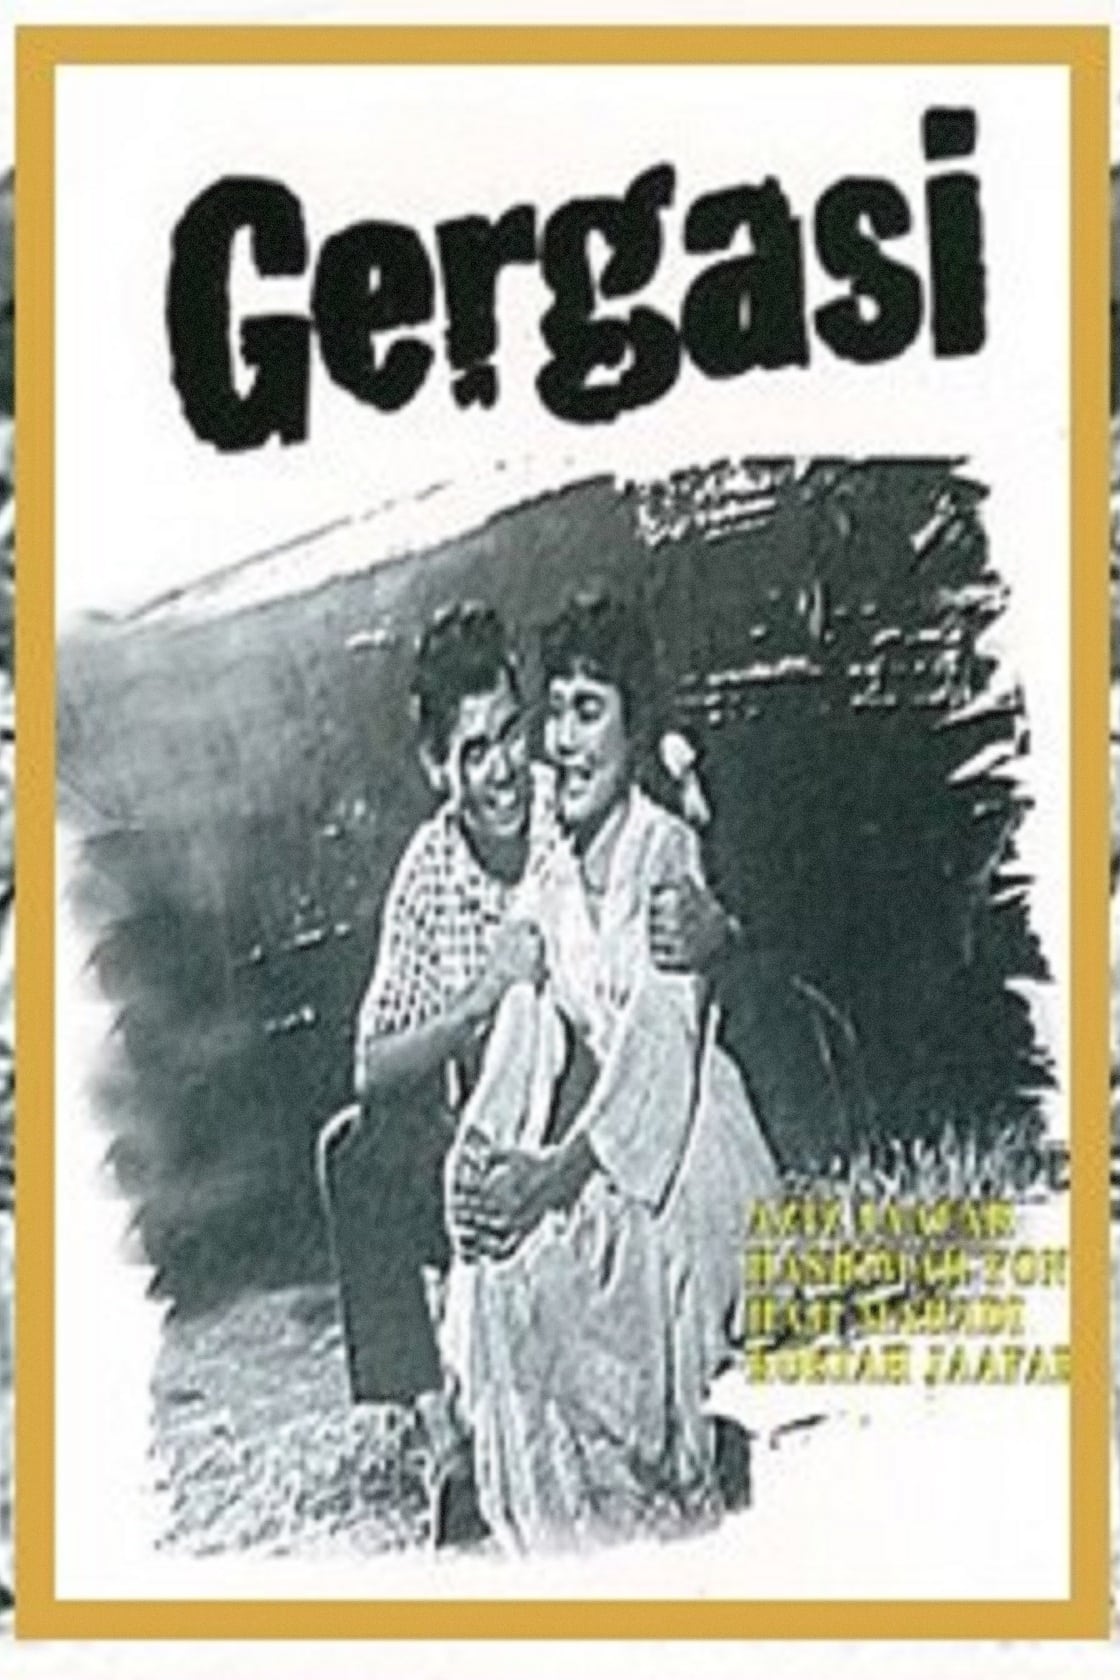 Gergasi (1958)